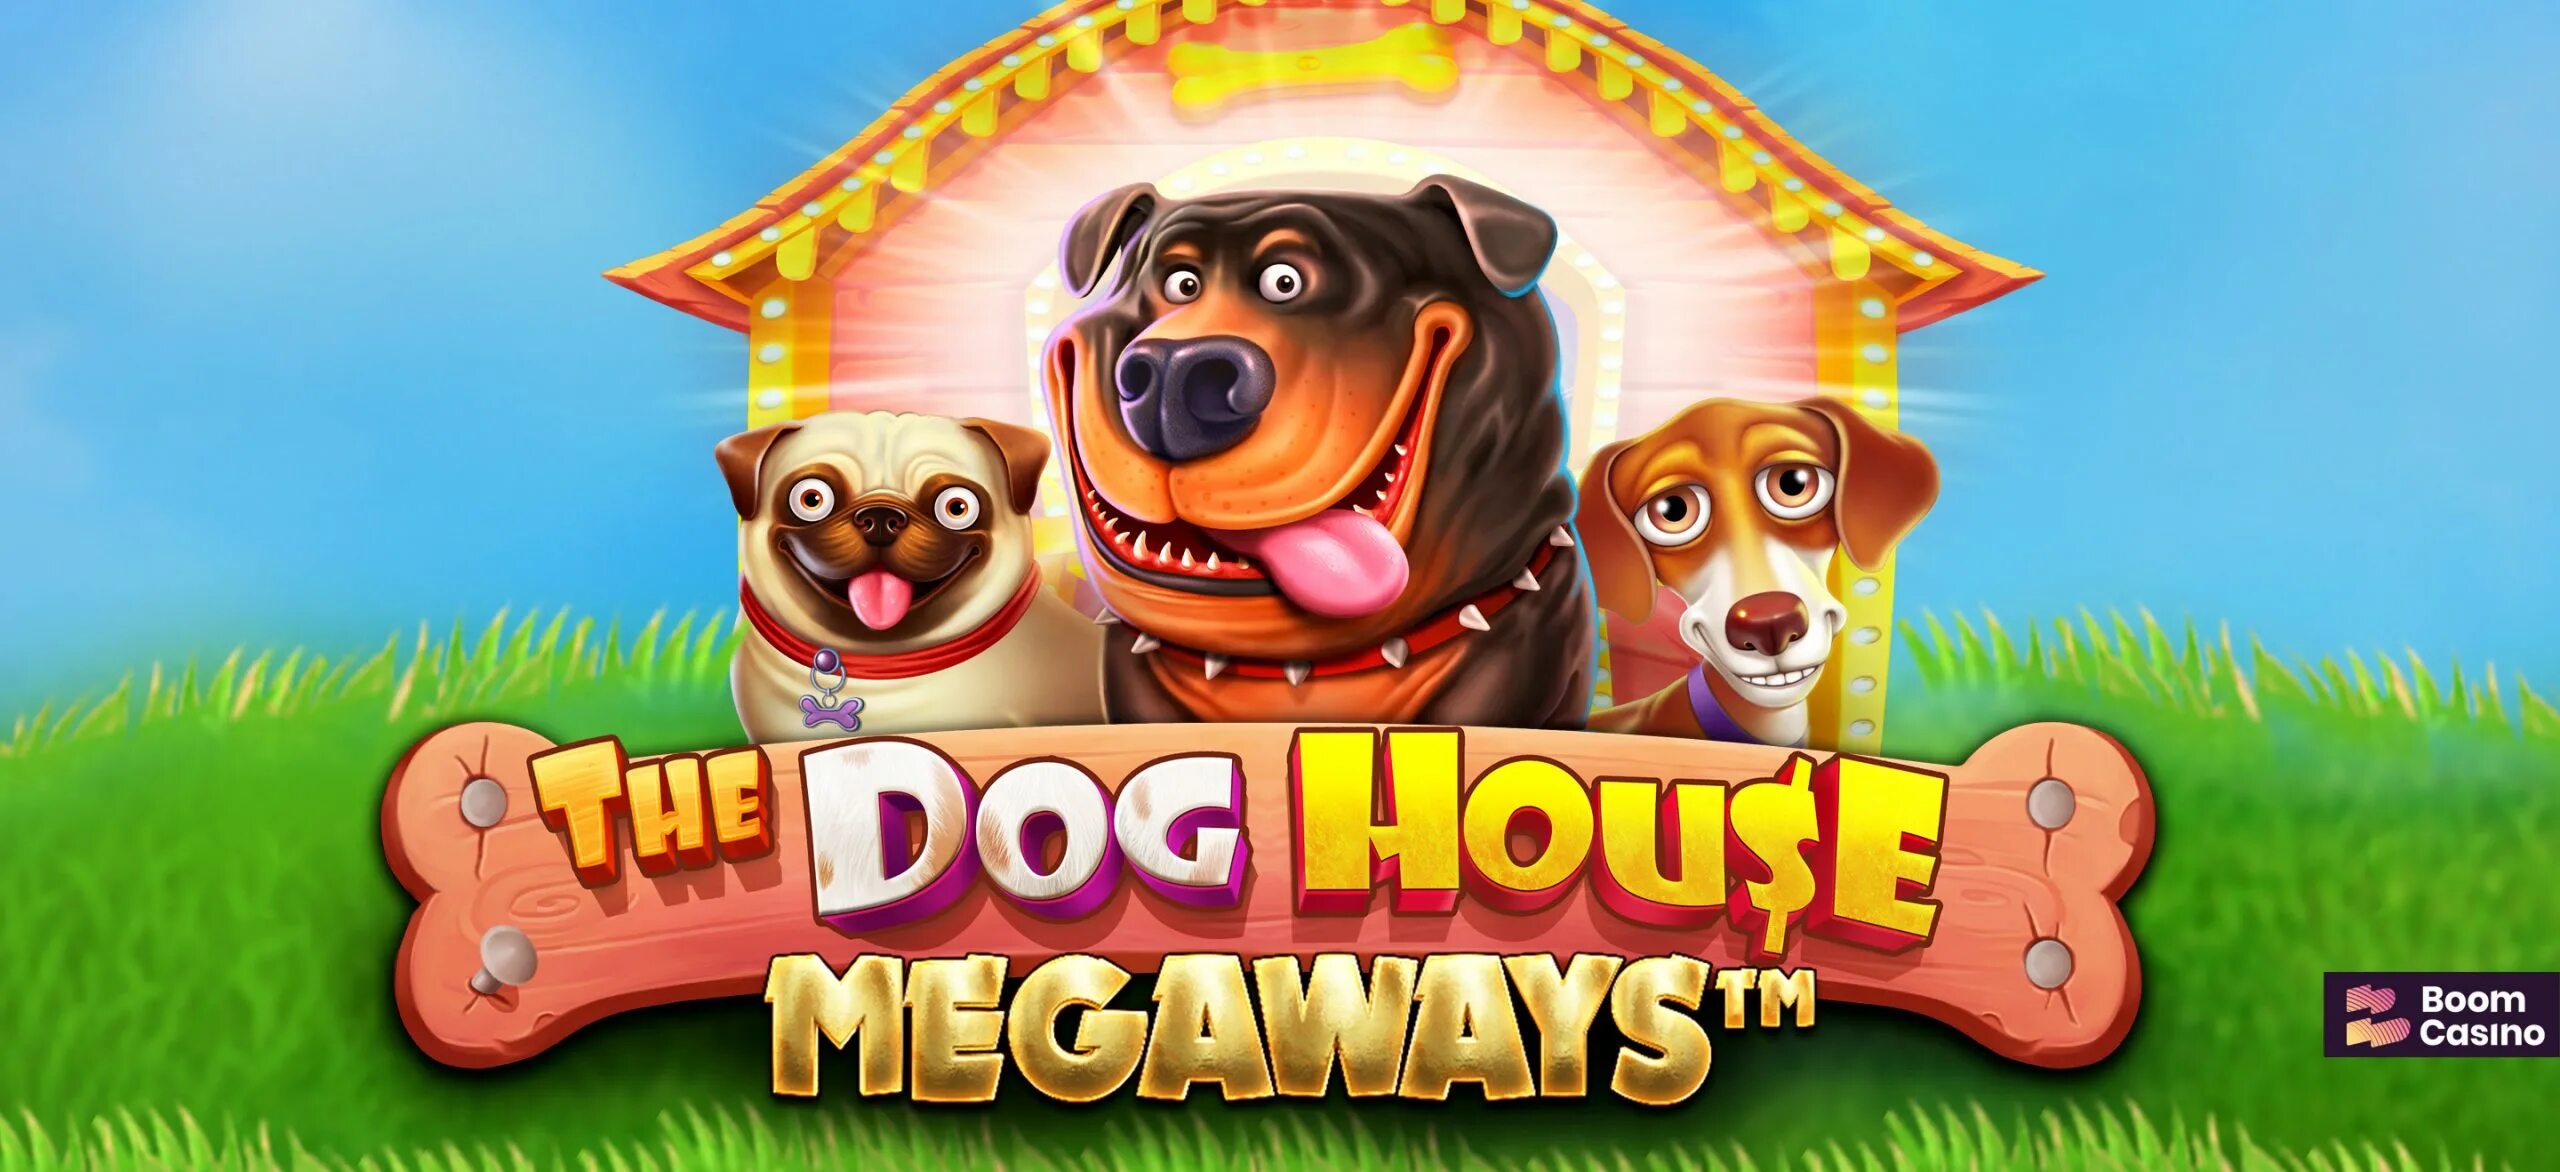 Дог Хаус слот. Dog House megaways. Слот Dog House megaways. Казино слот the Dog House.